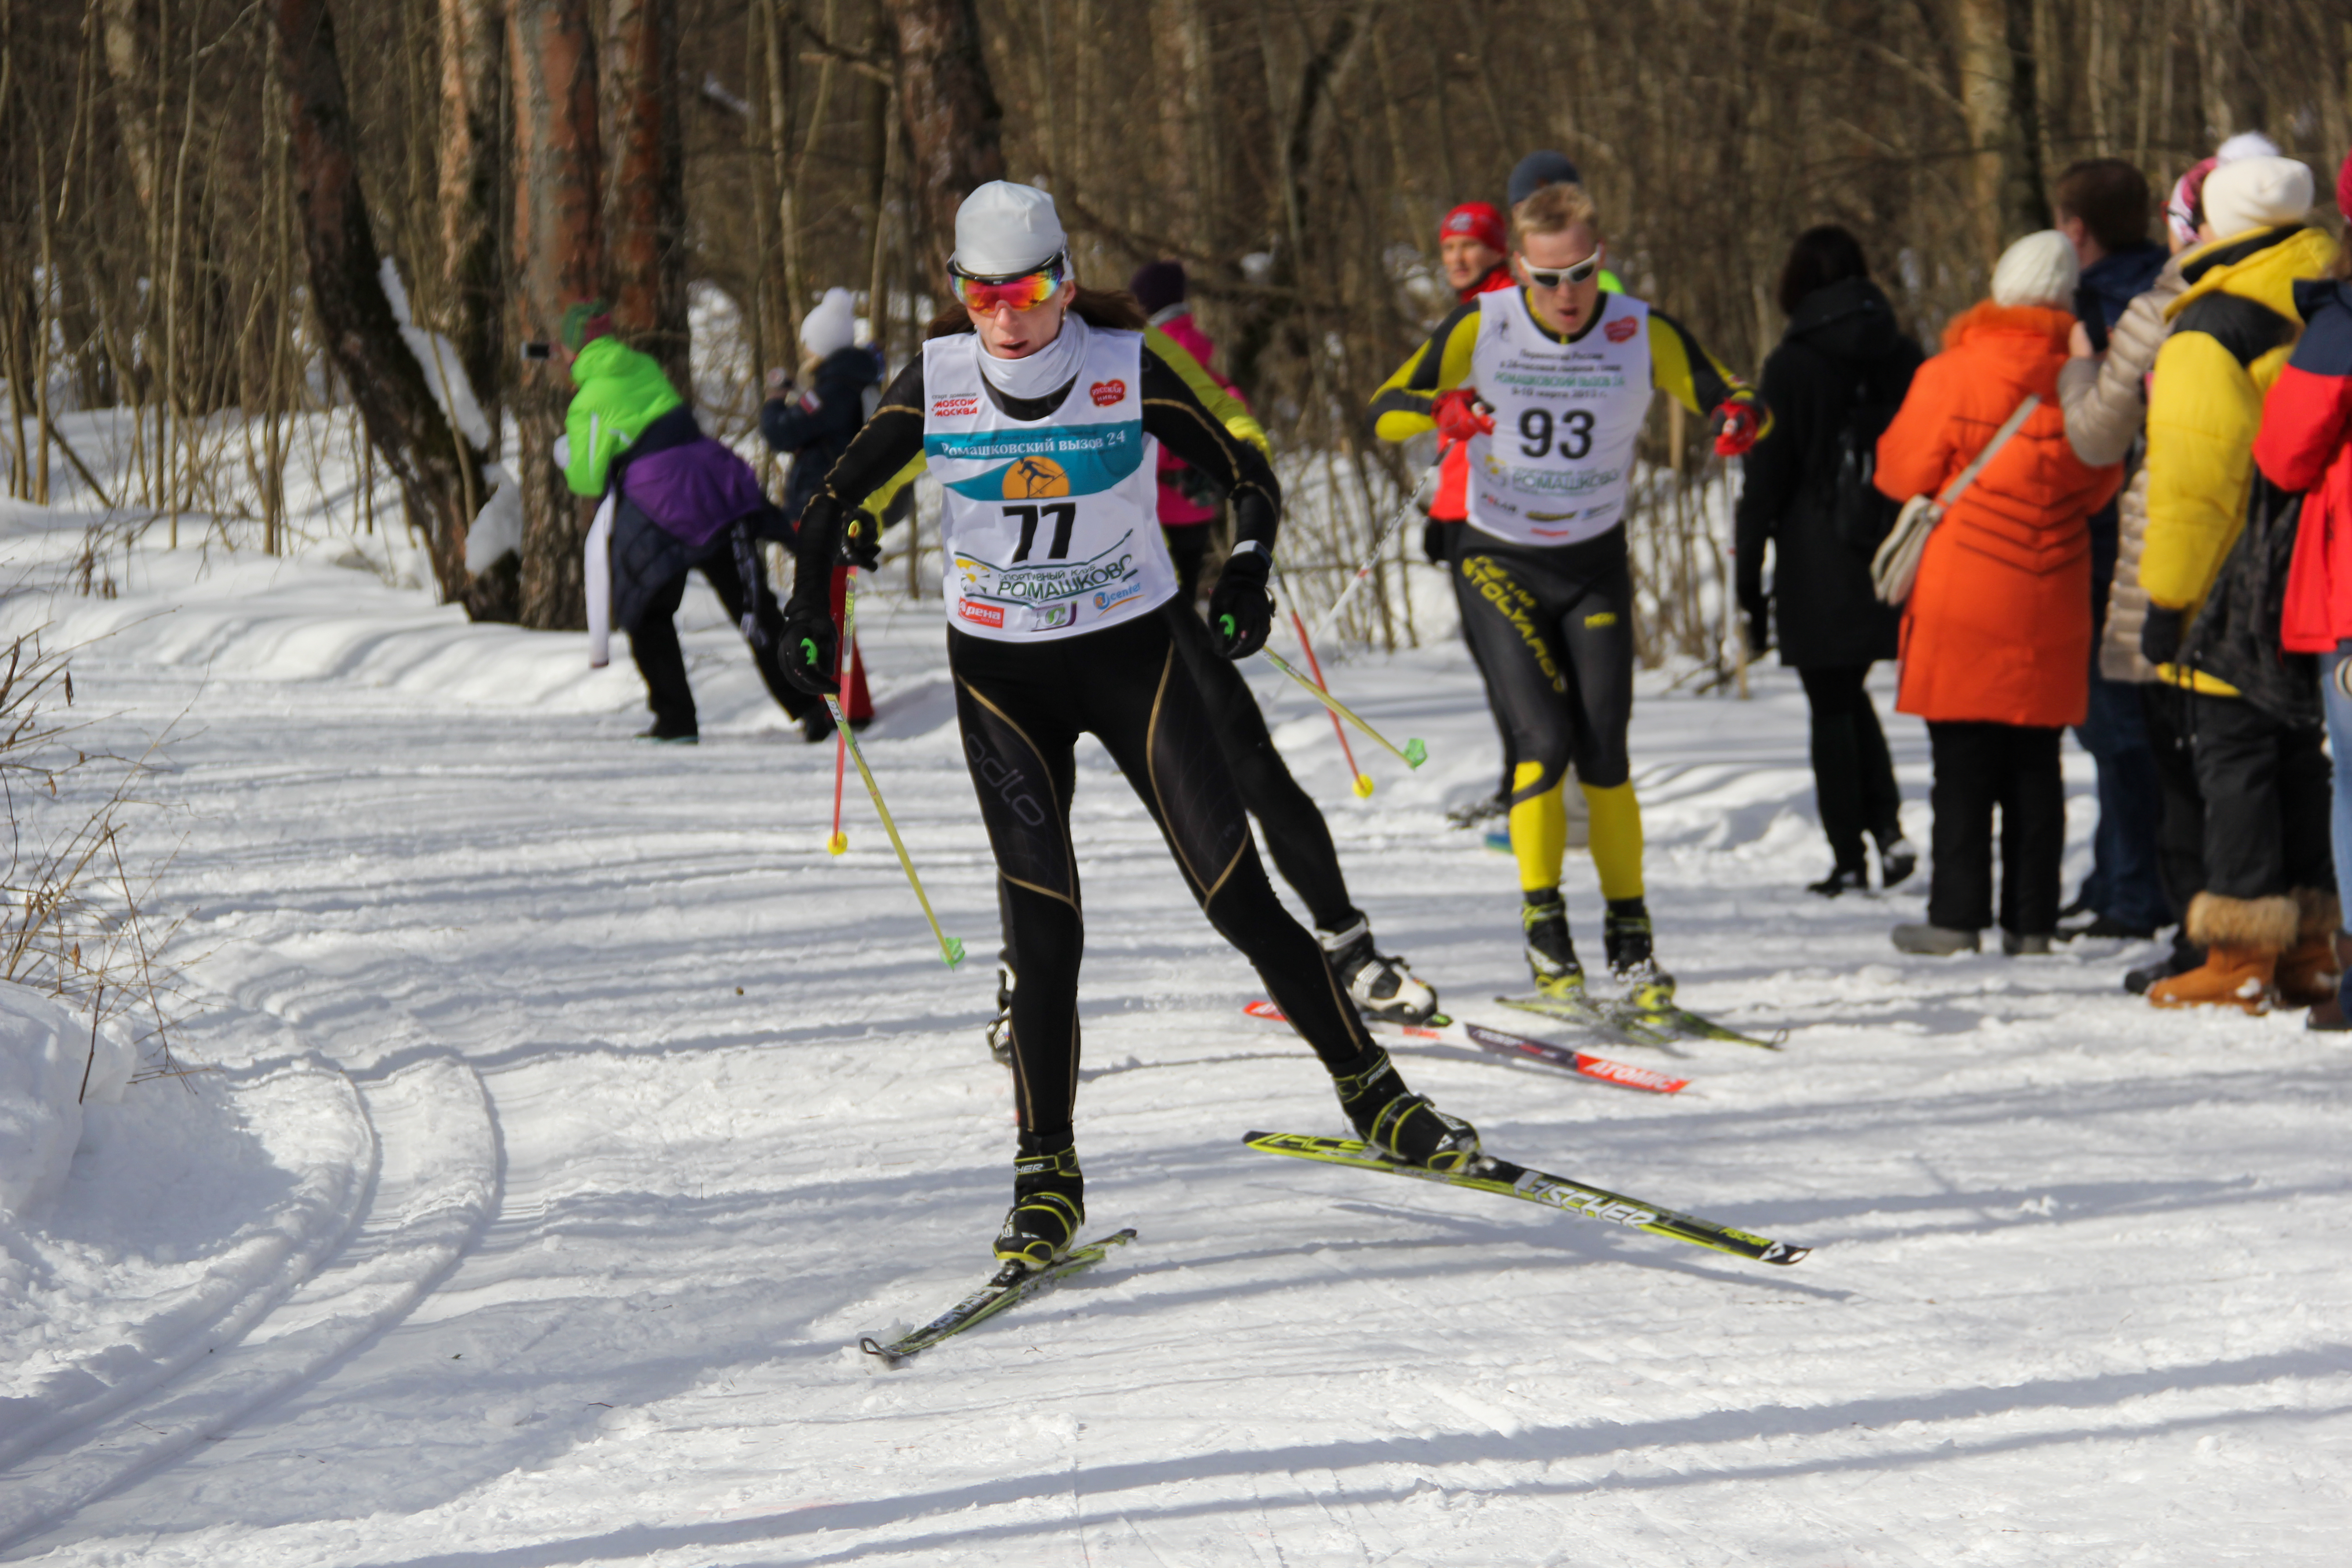 Триатлон-эстафета "Зима-Лето" 25.03.2018 в Ромашково (бег, велосипед, лыжи). Лыжный этап